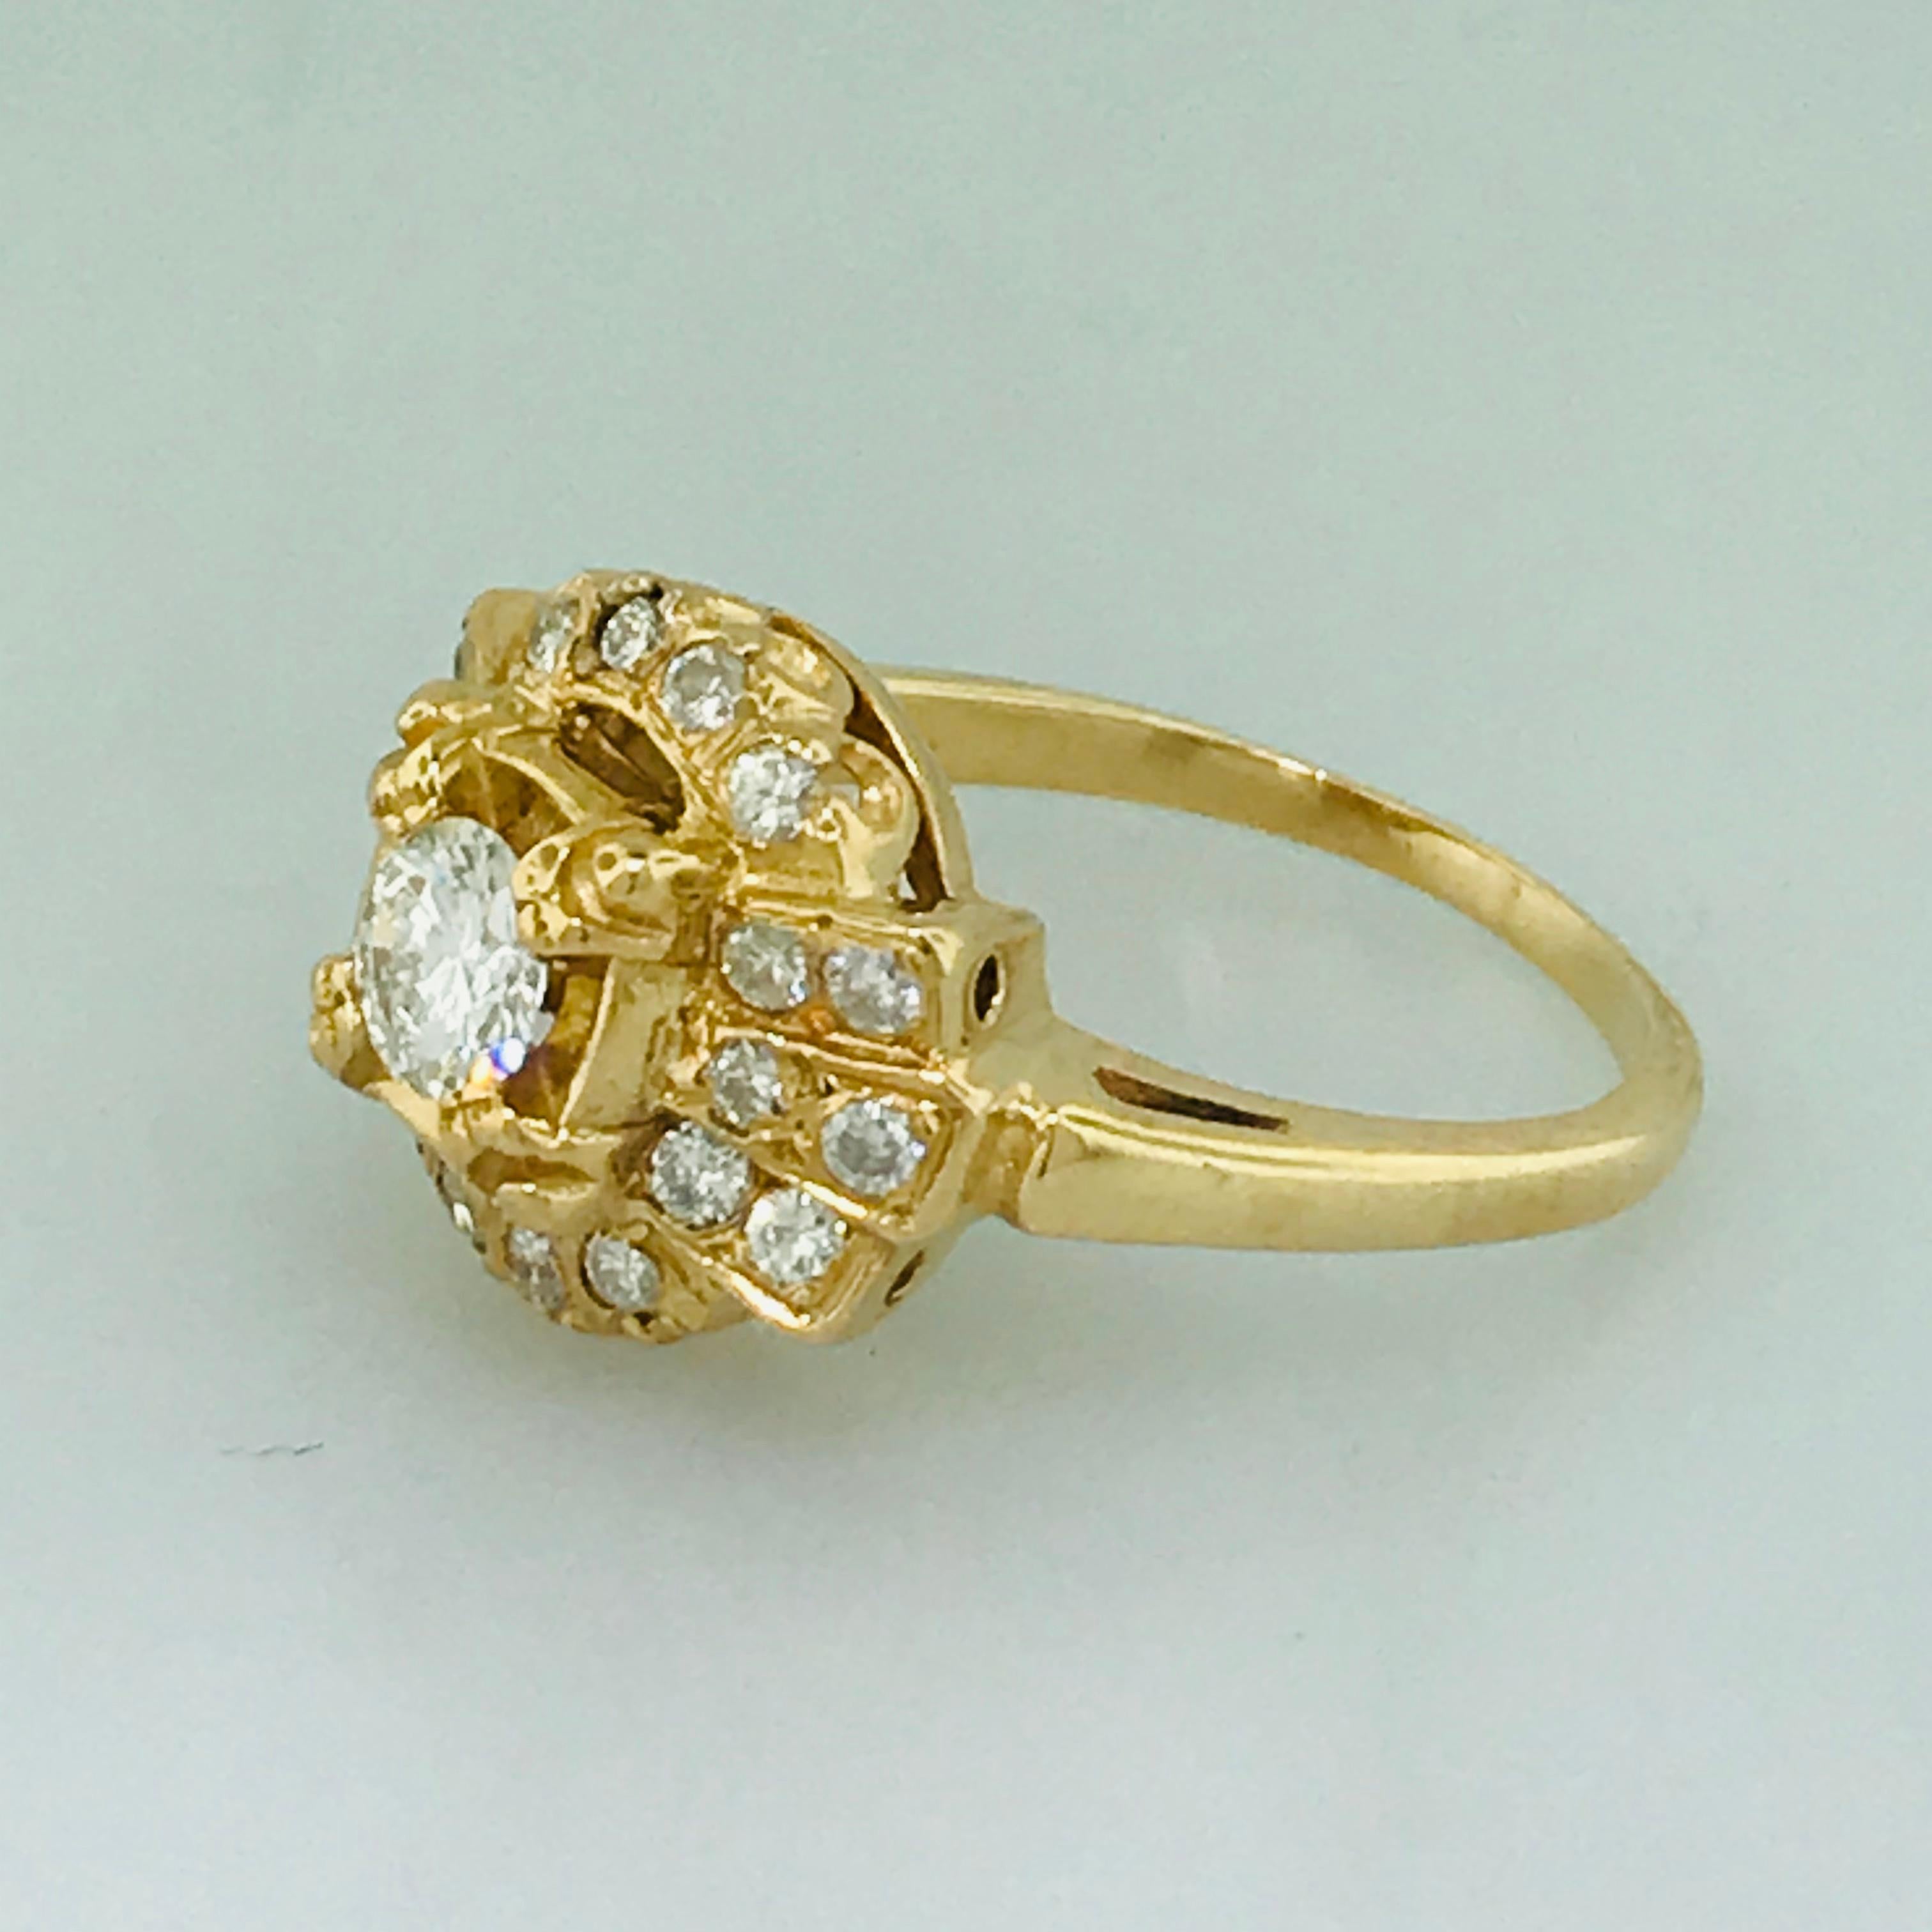 Round Cut 1.00 Carat Diamond Vintage Estate Ring in 14 Karat Yellow Gold, circa 1935